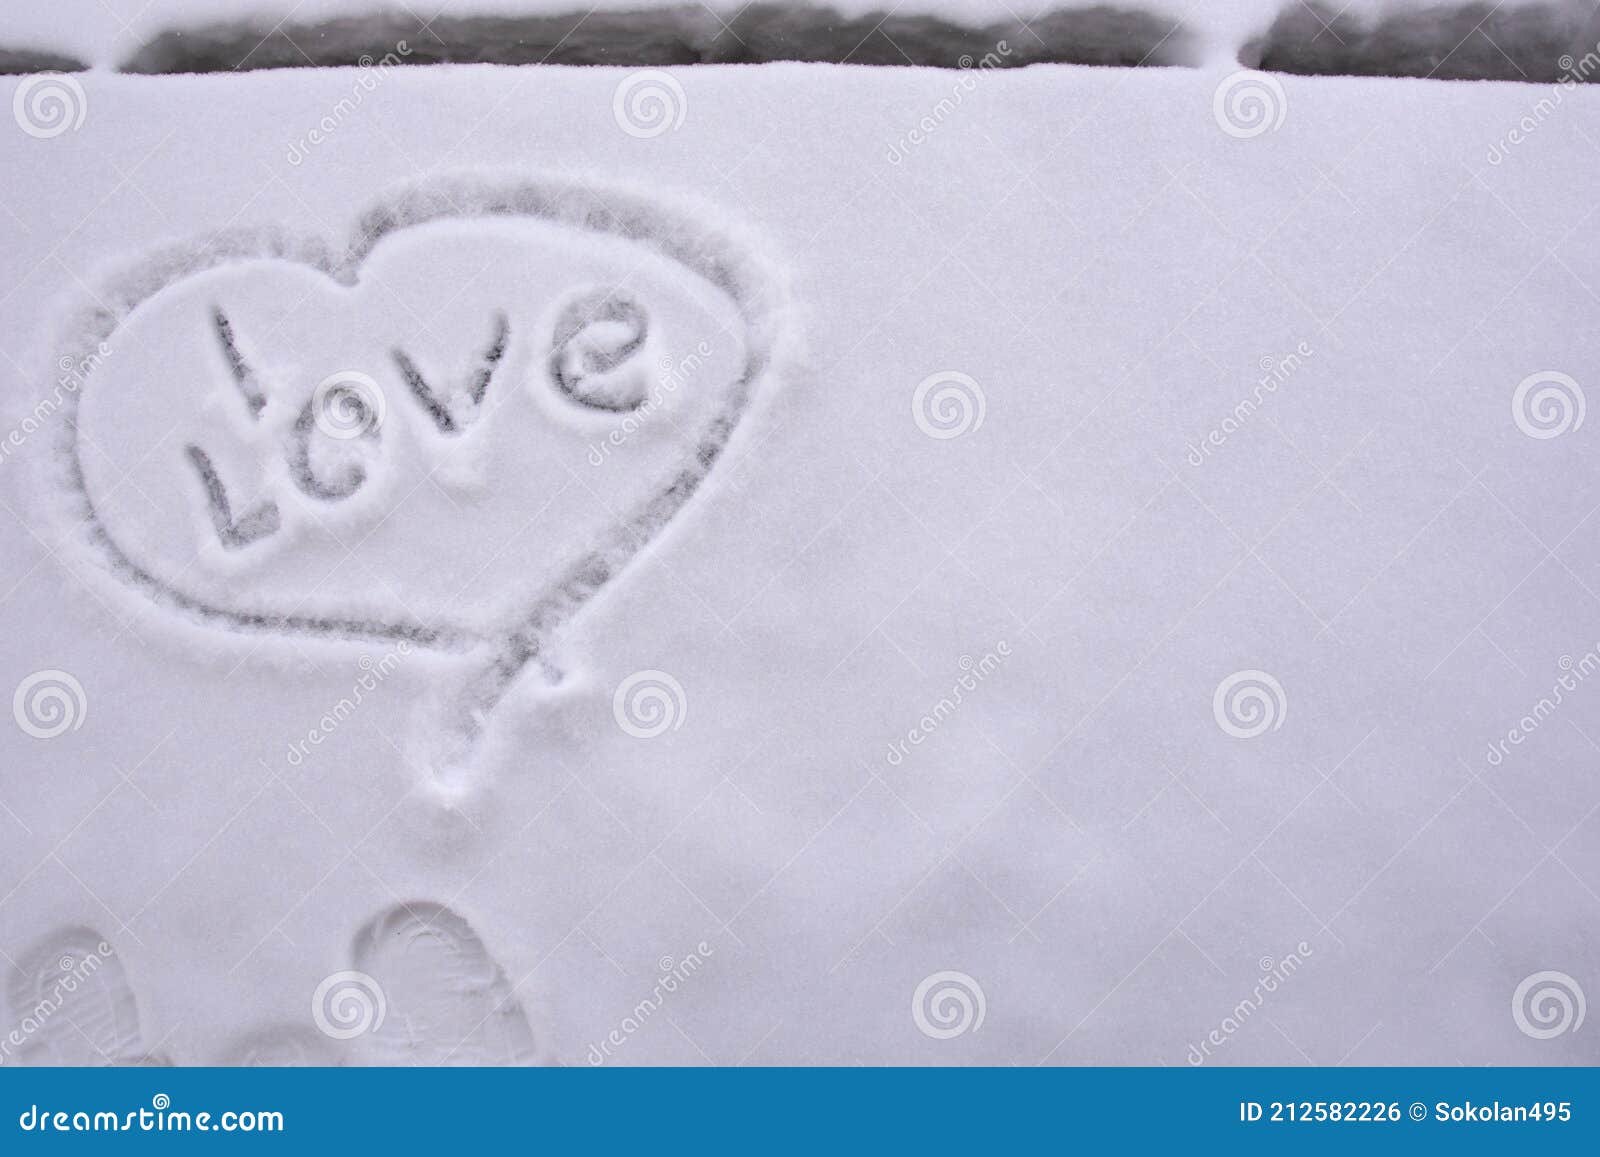 Ich liebe geschrieben in Schnee am Auto nachts - ein lizenzfreies